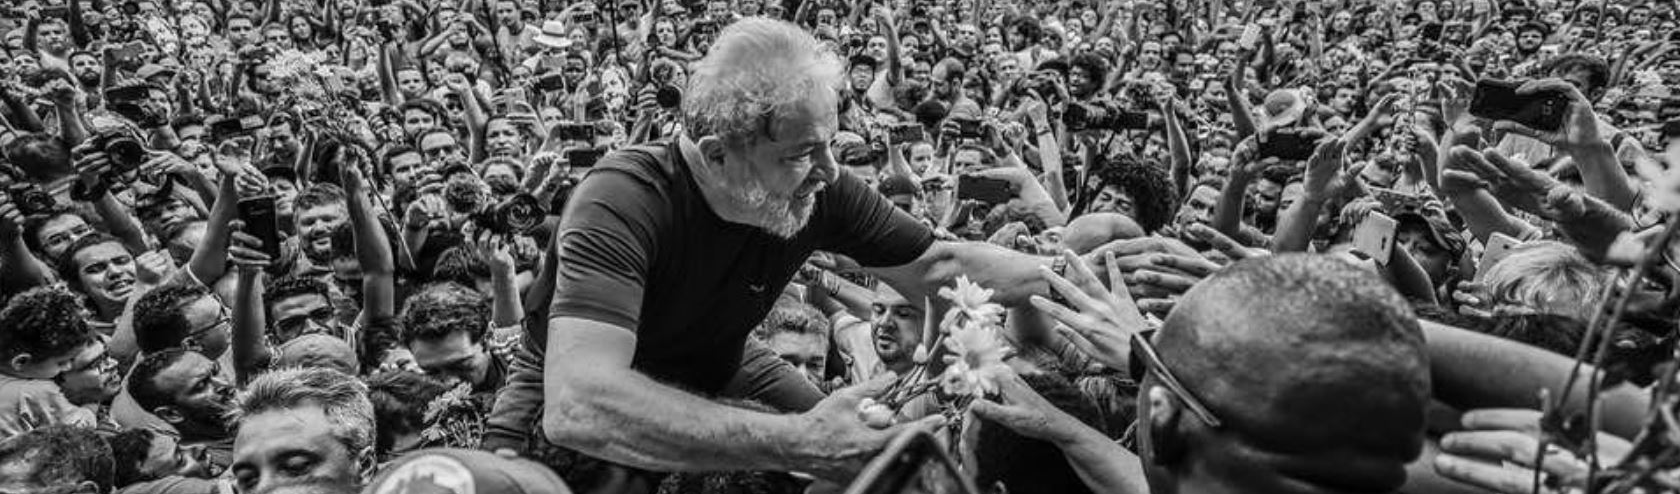 Um processo cheio de vícios e arbitrariedades: balanço dos 500 dias de Lula na prisão